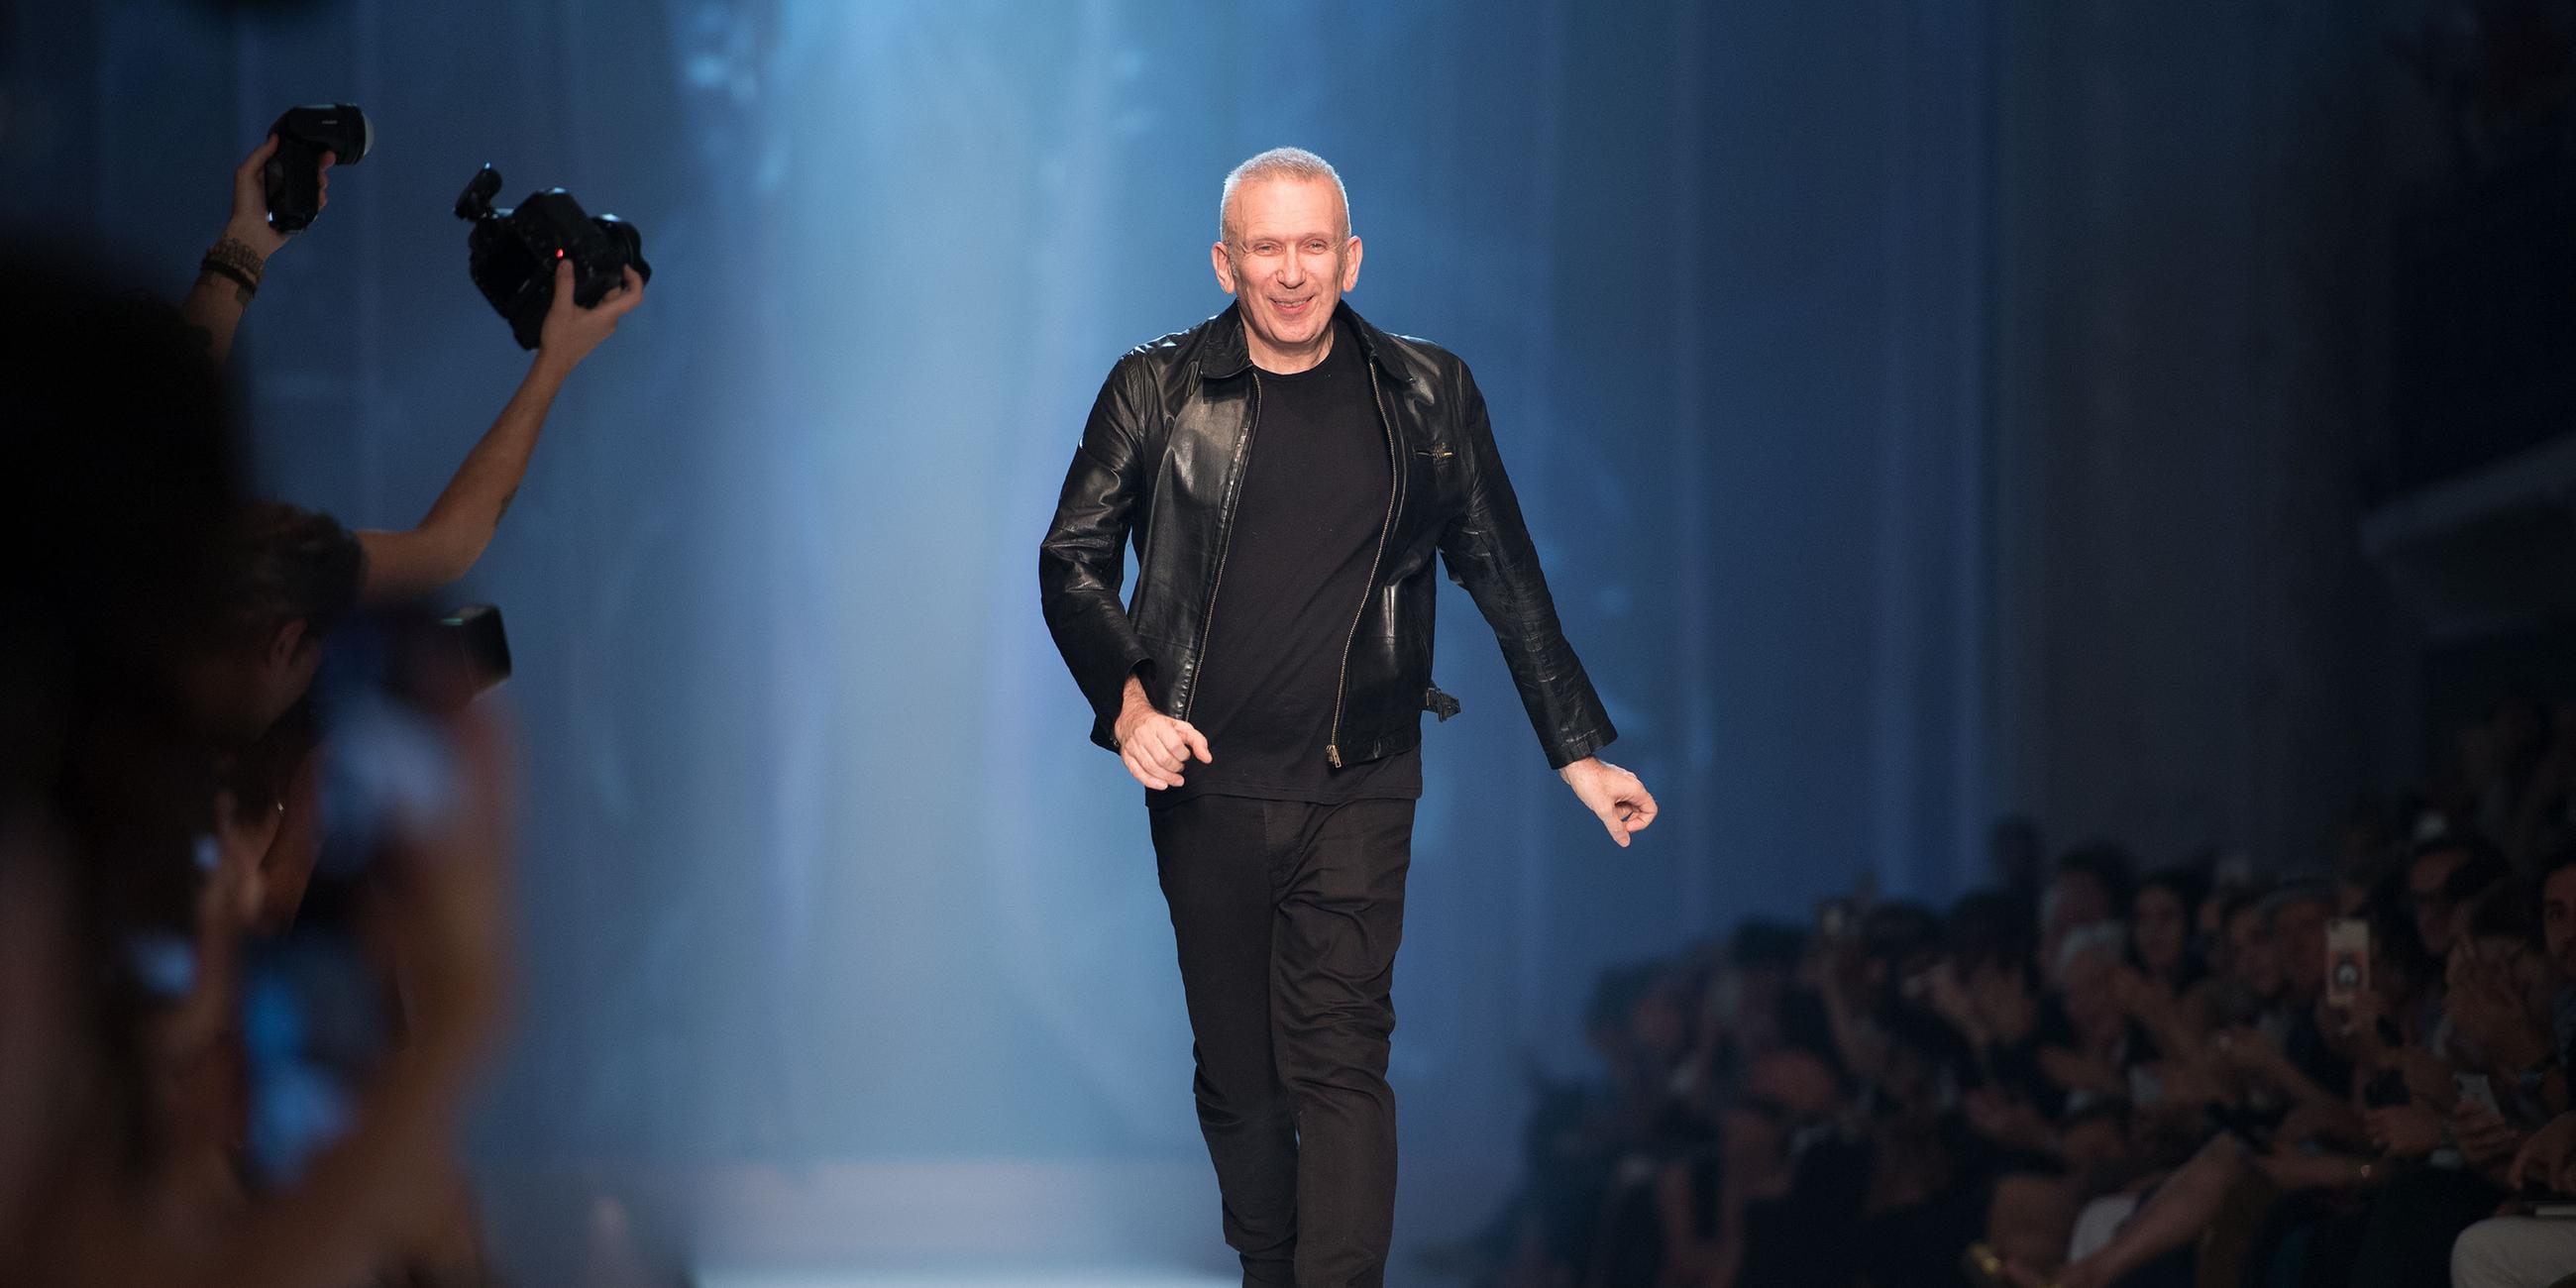 Archivbild: Der Modedesigner, Jean Paul Gaultier, läuft den Catwalk entlang nach einer seiner Shows in Paris 2018.